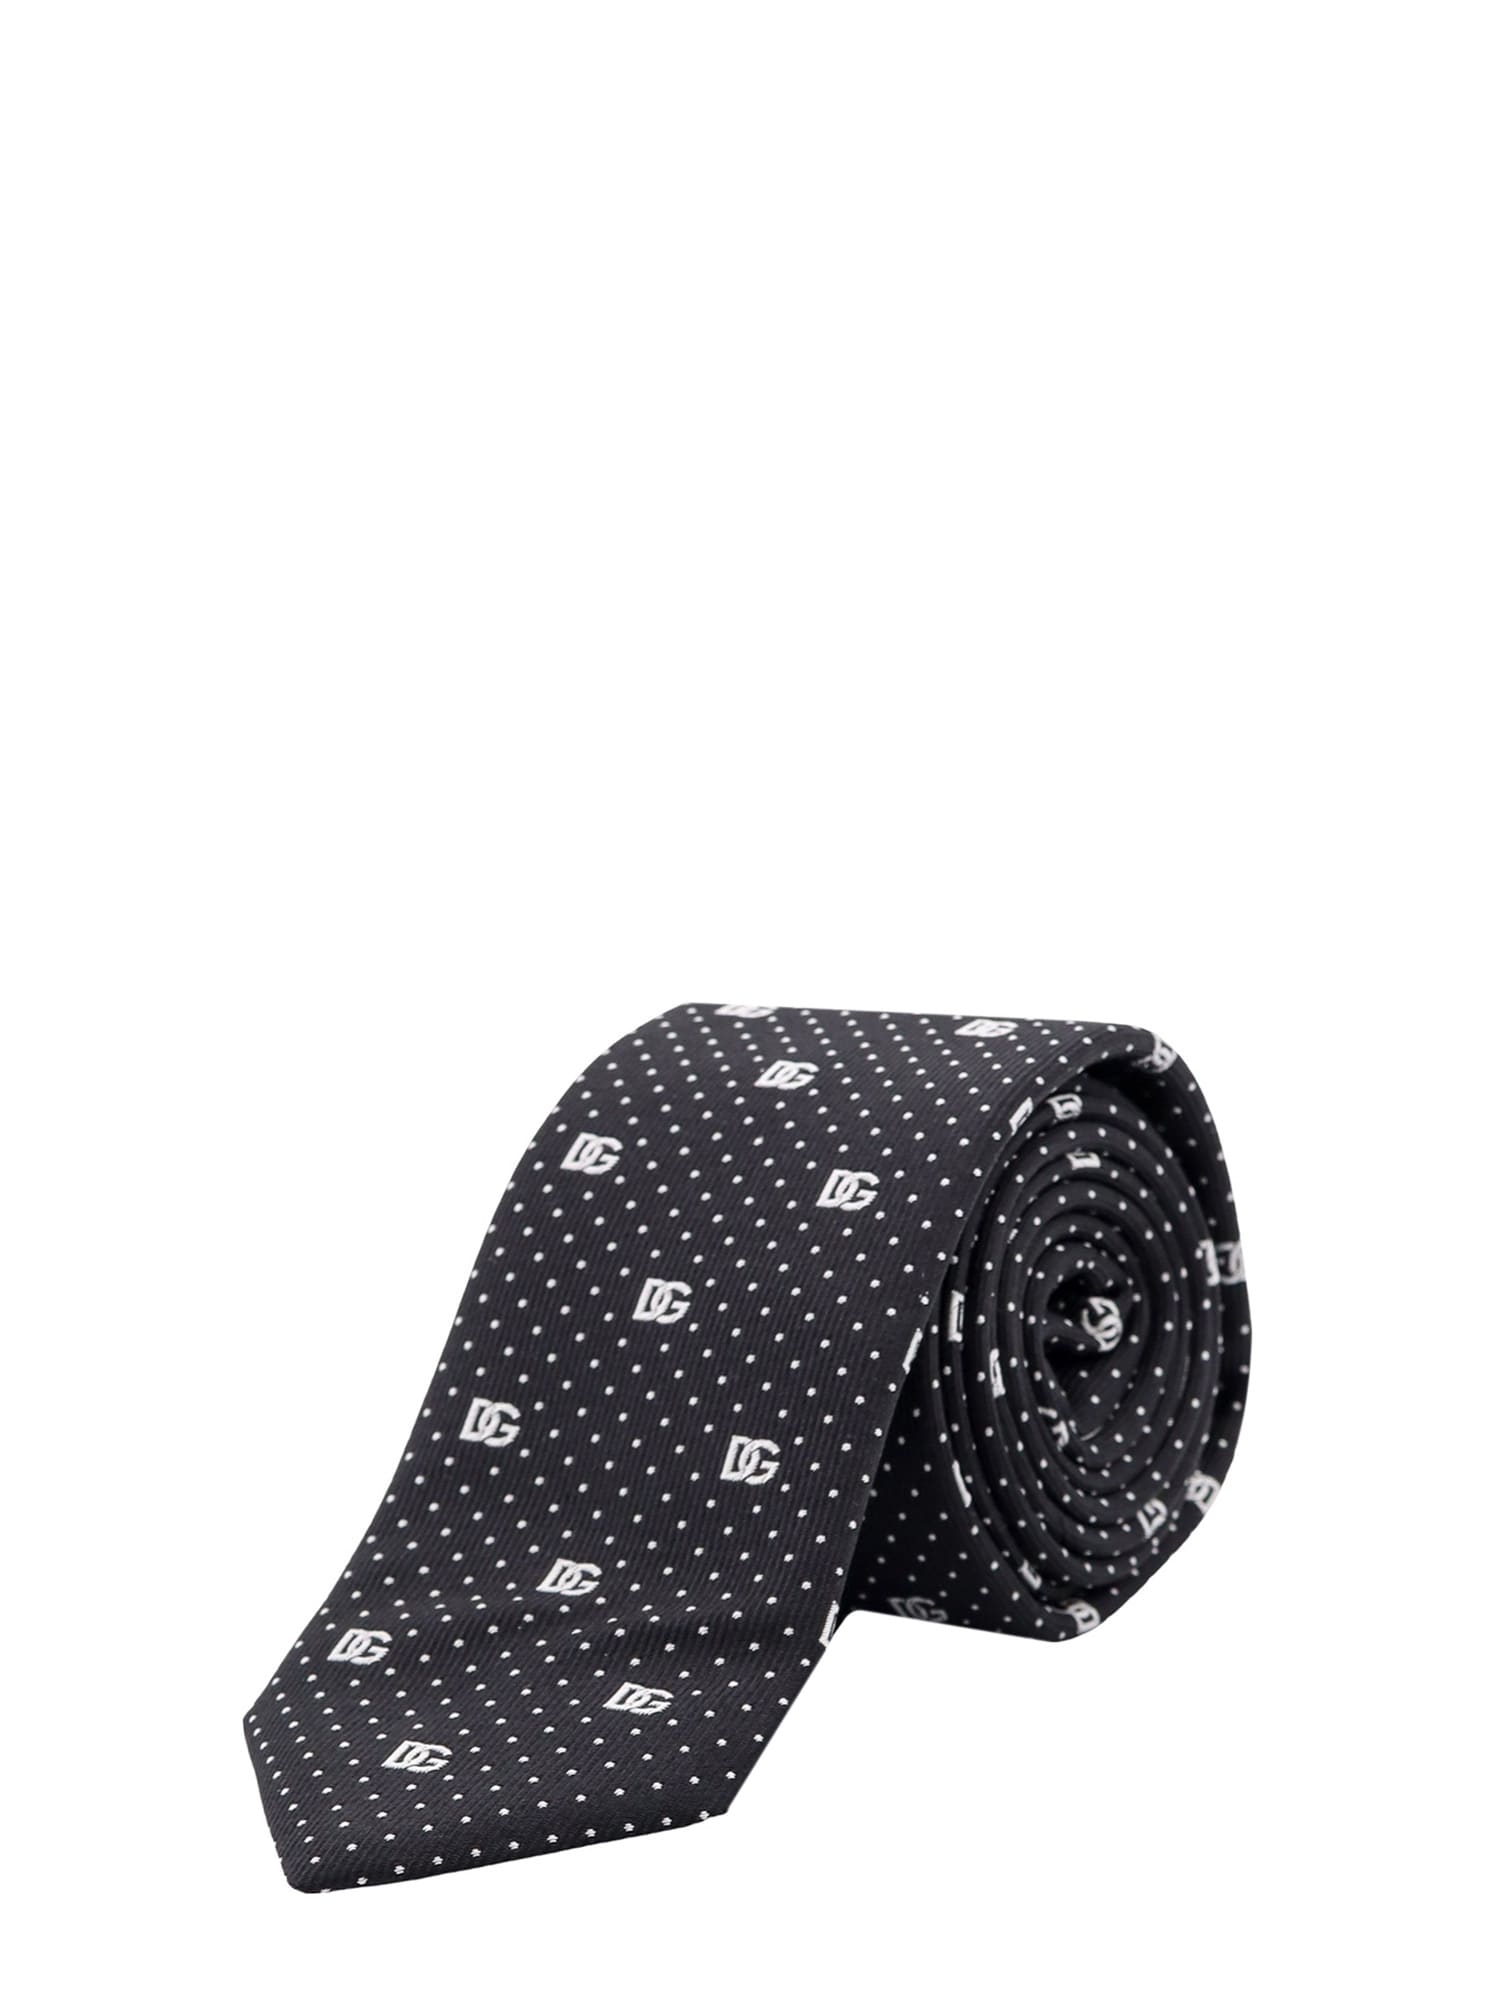 Dolce & Gabbana Tie In Black/white